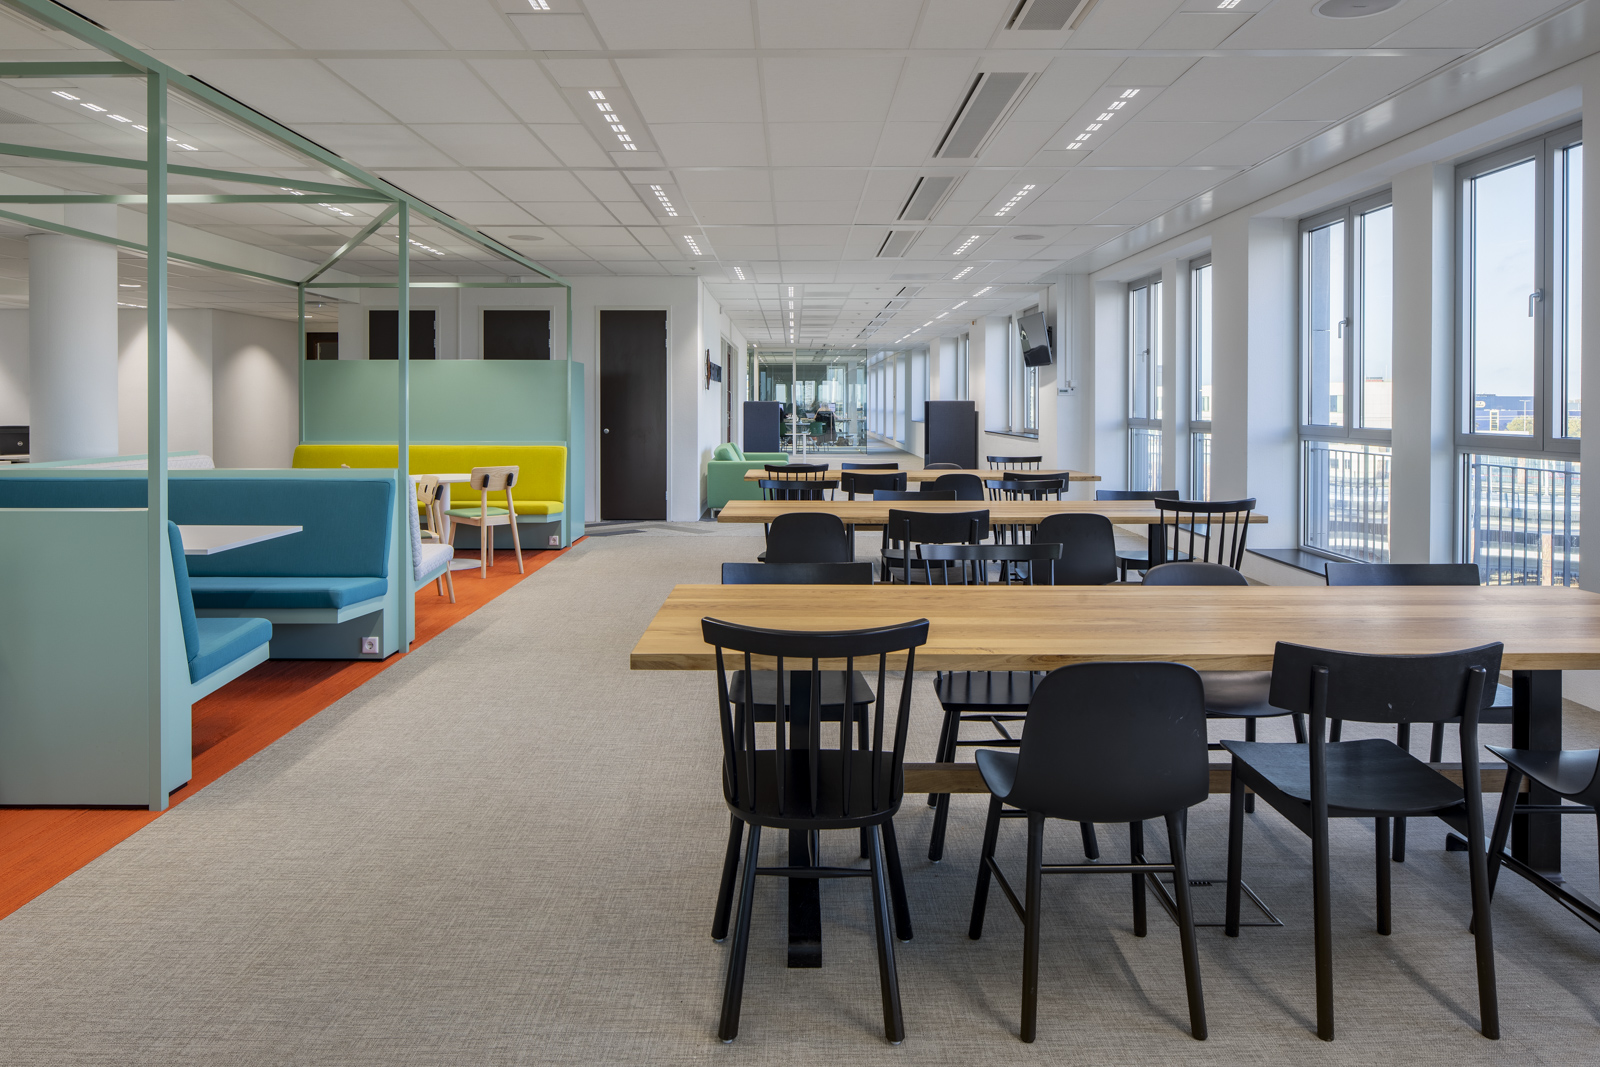 https://www.heyligersarchitects.nl/wp-content/uploads/2021/10/11_Heyligers_interieur_interior_kantoor_office_Leidserijn_WoutervanderSar_Significant_Utrecht-11.jpg